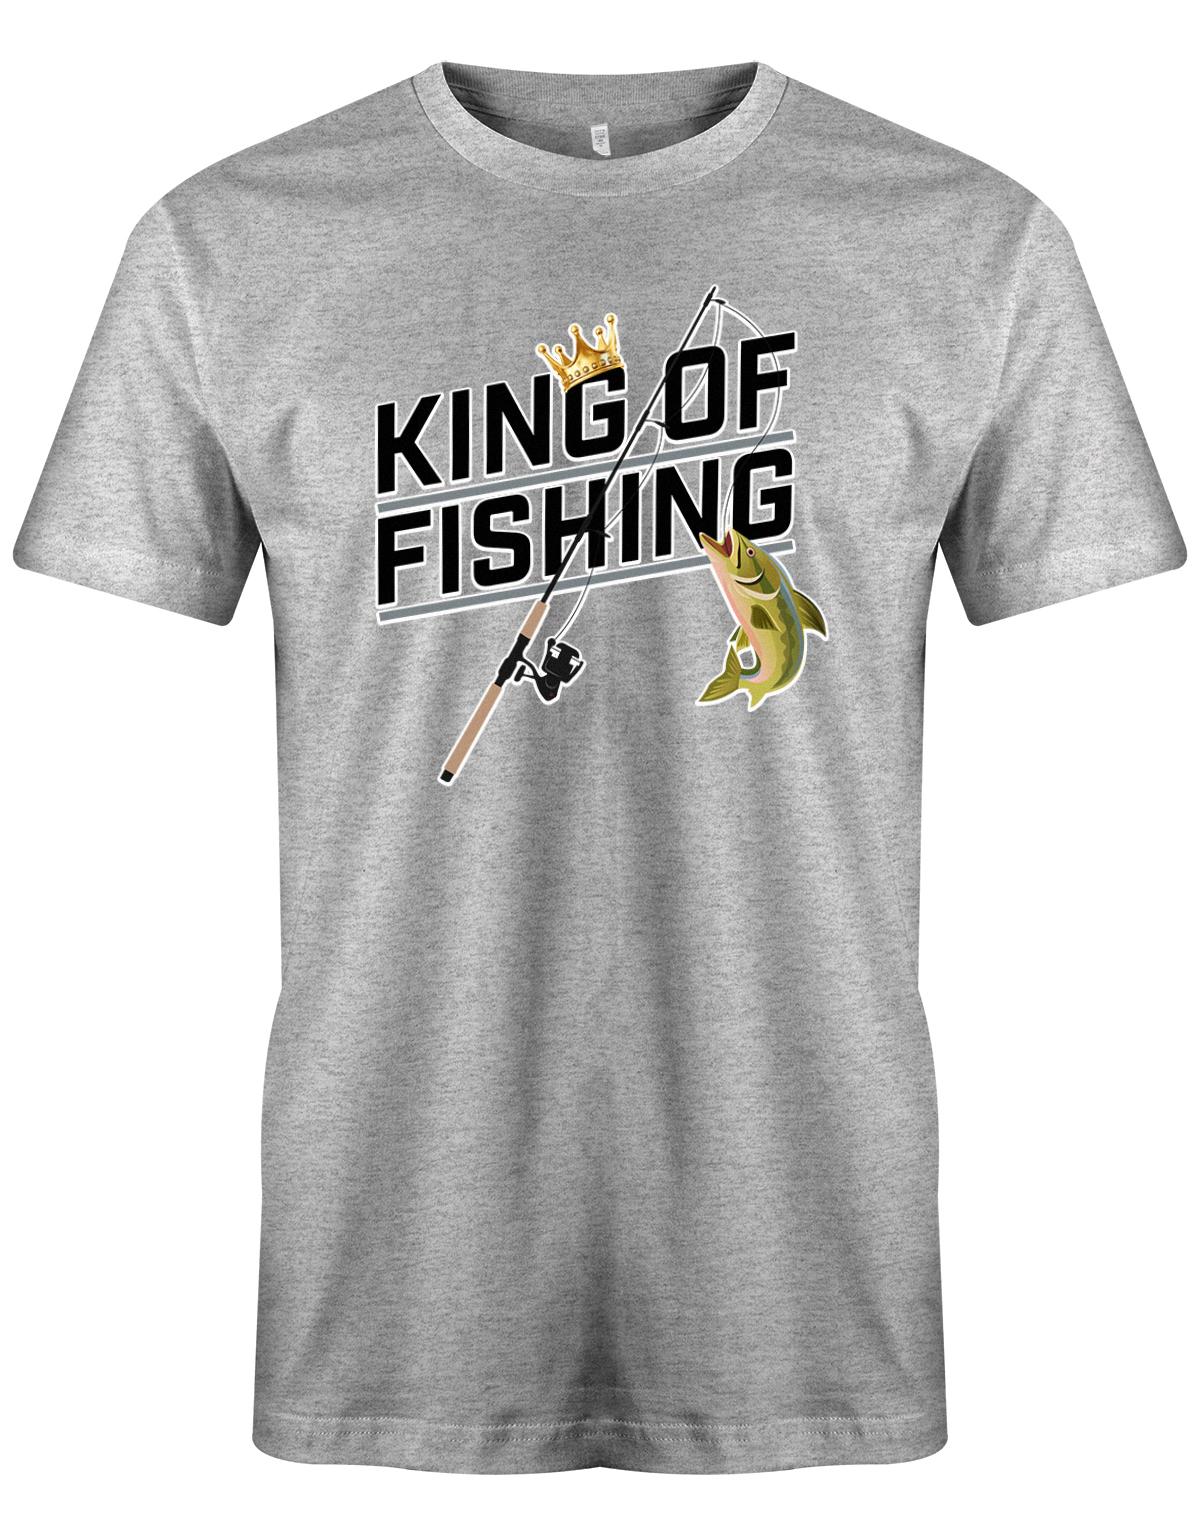 King-of-Fishing-Herren-Shirt-Grau